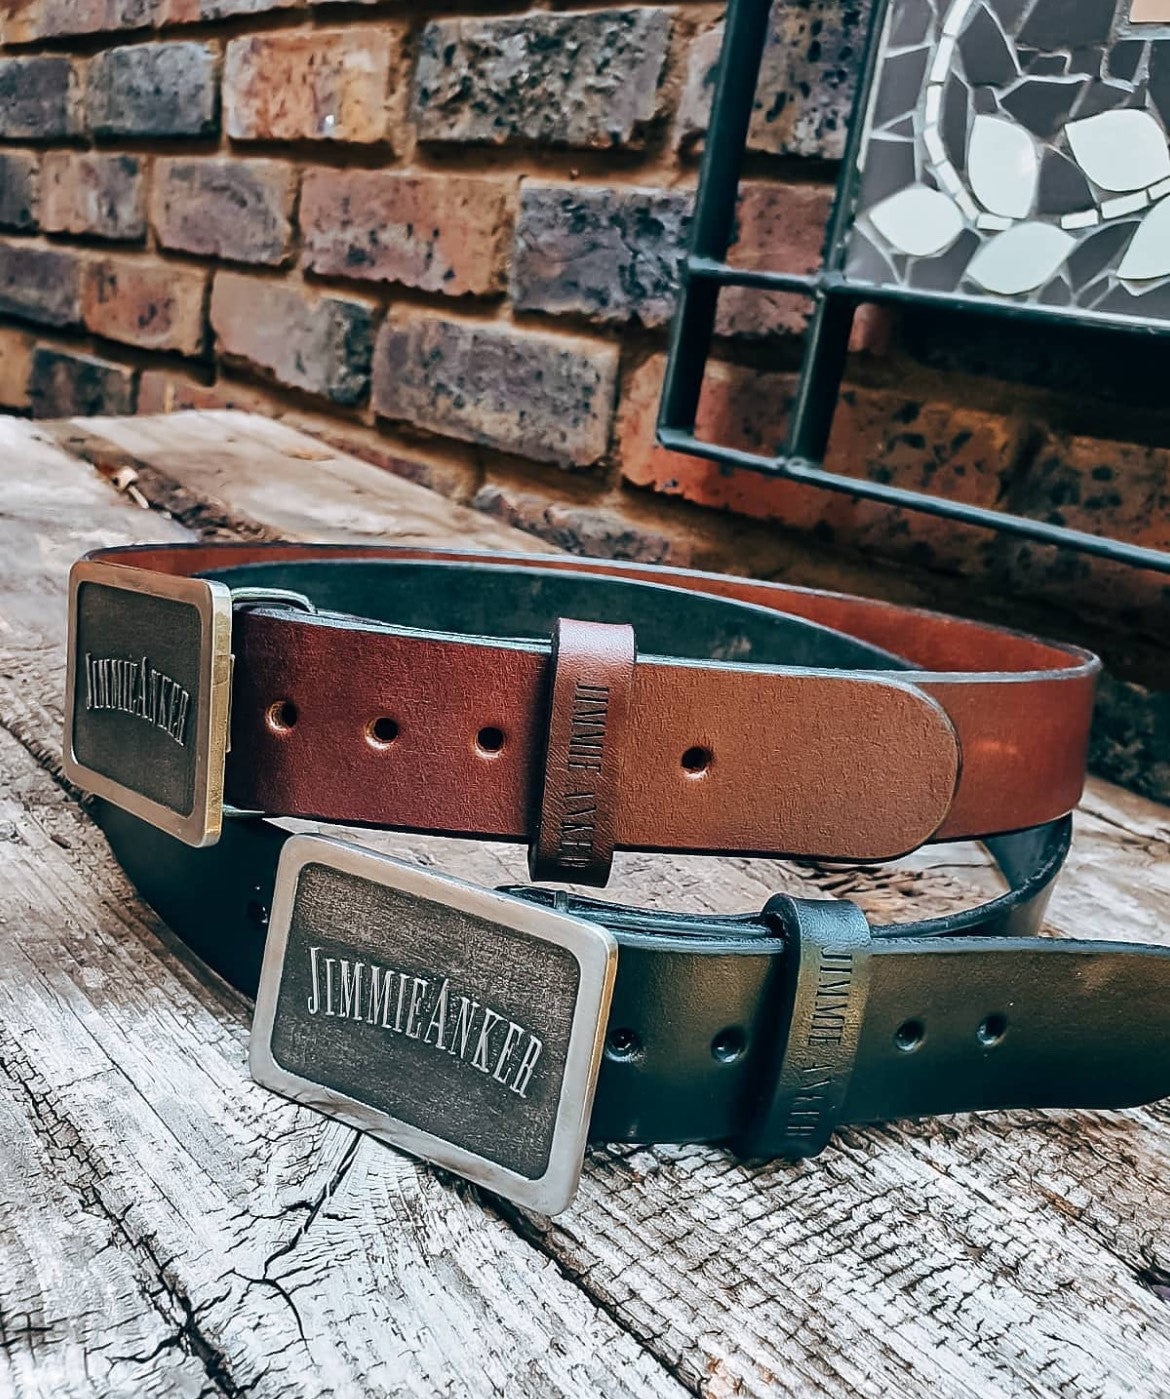 Jimmie Anker Men's Leather belts